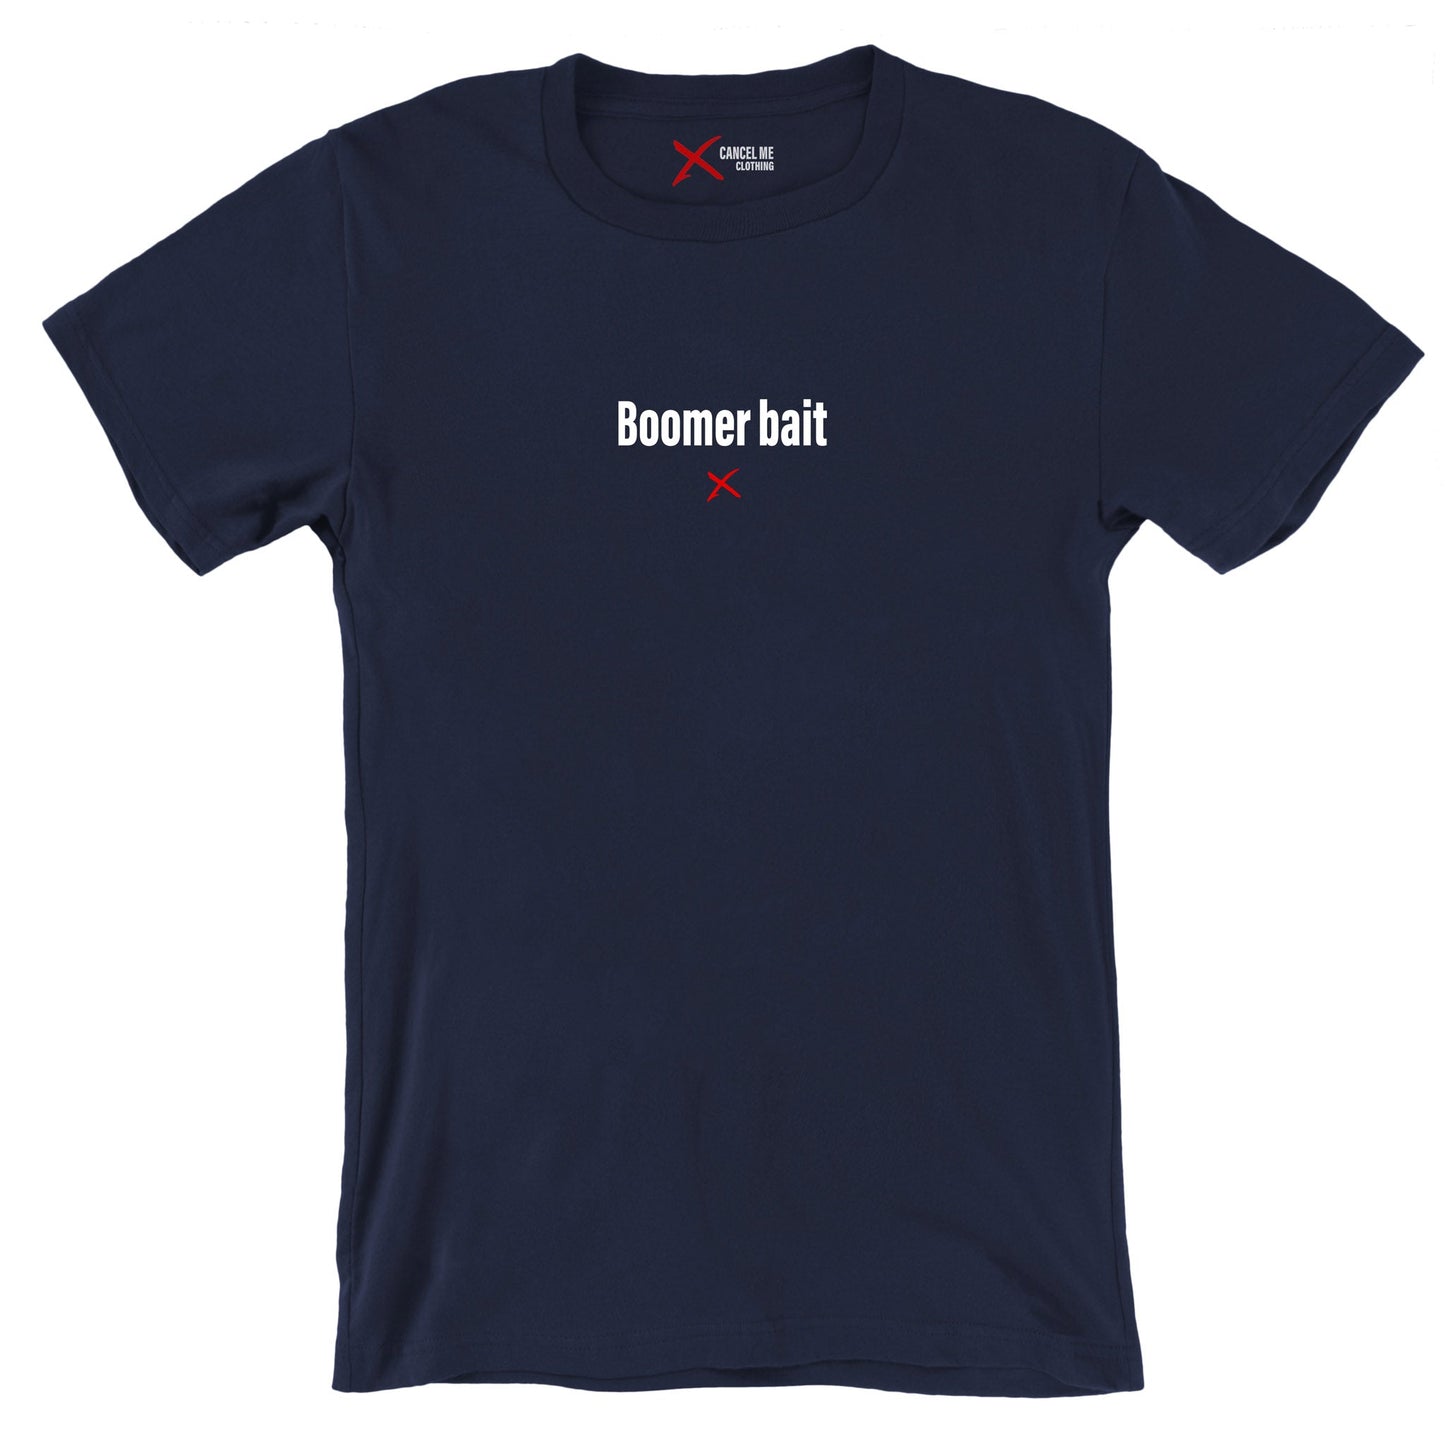 Boomer bait - Shirt